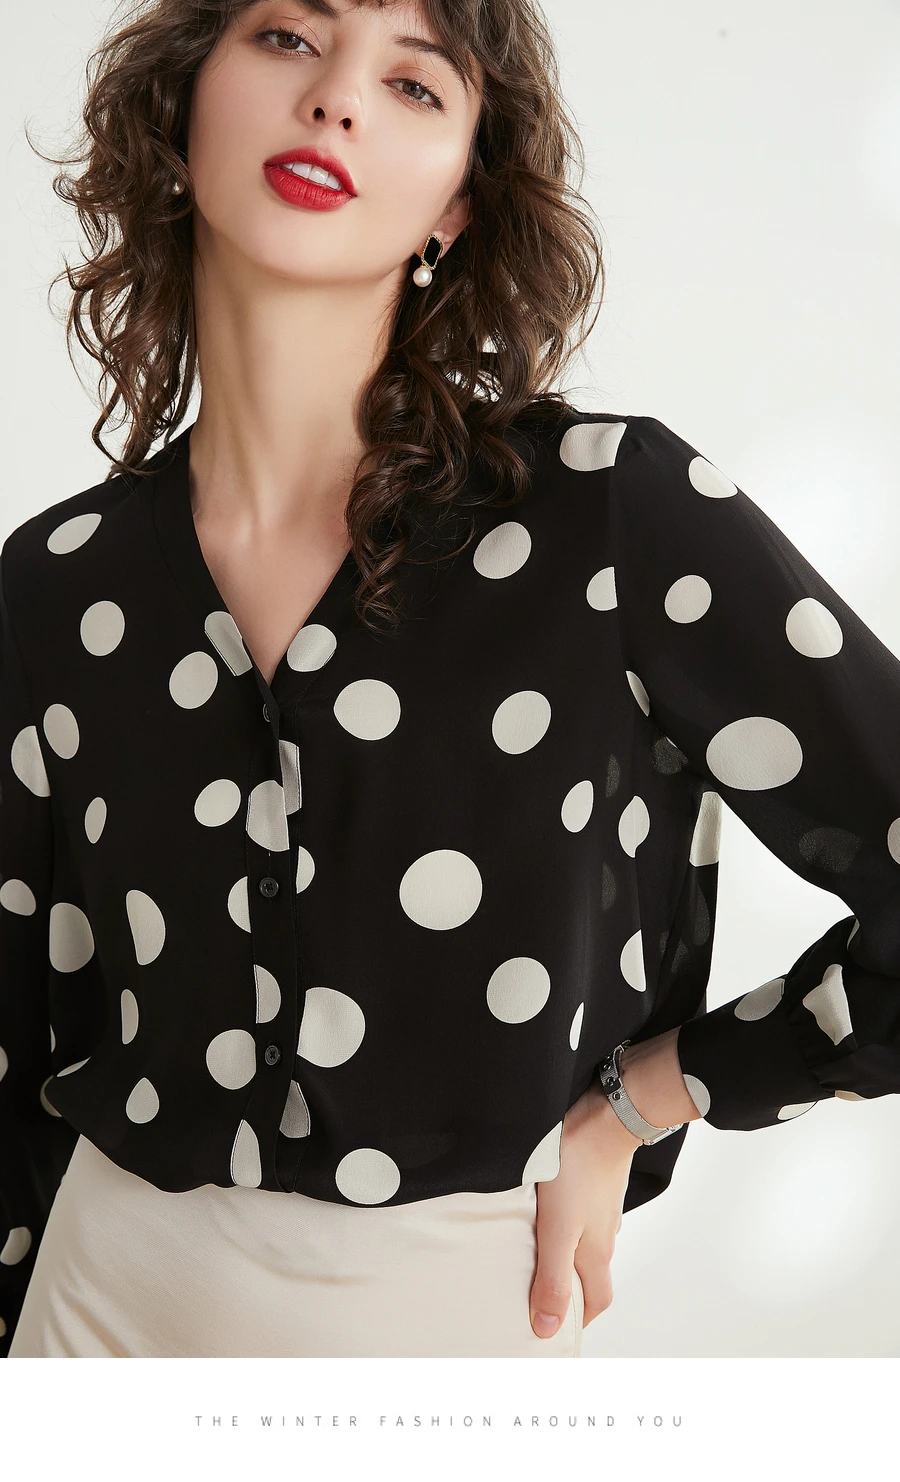 Женская блузка в горошек, из натурального шелка, в горошек, с принтом, блузки для женщин, блузка с длинными рукавами, рубашка, Офисная Женская блузка